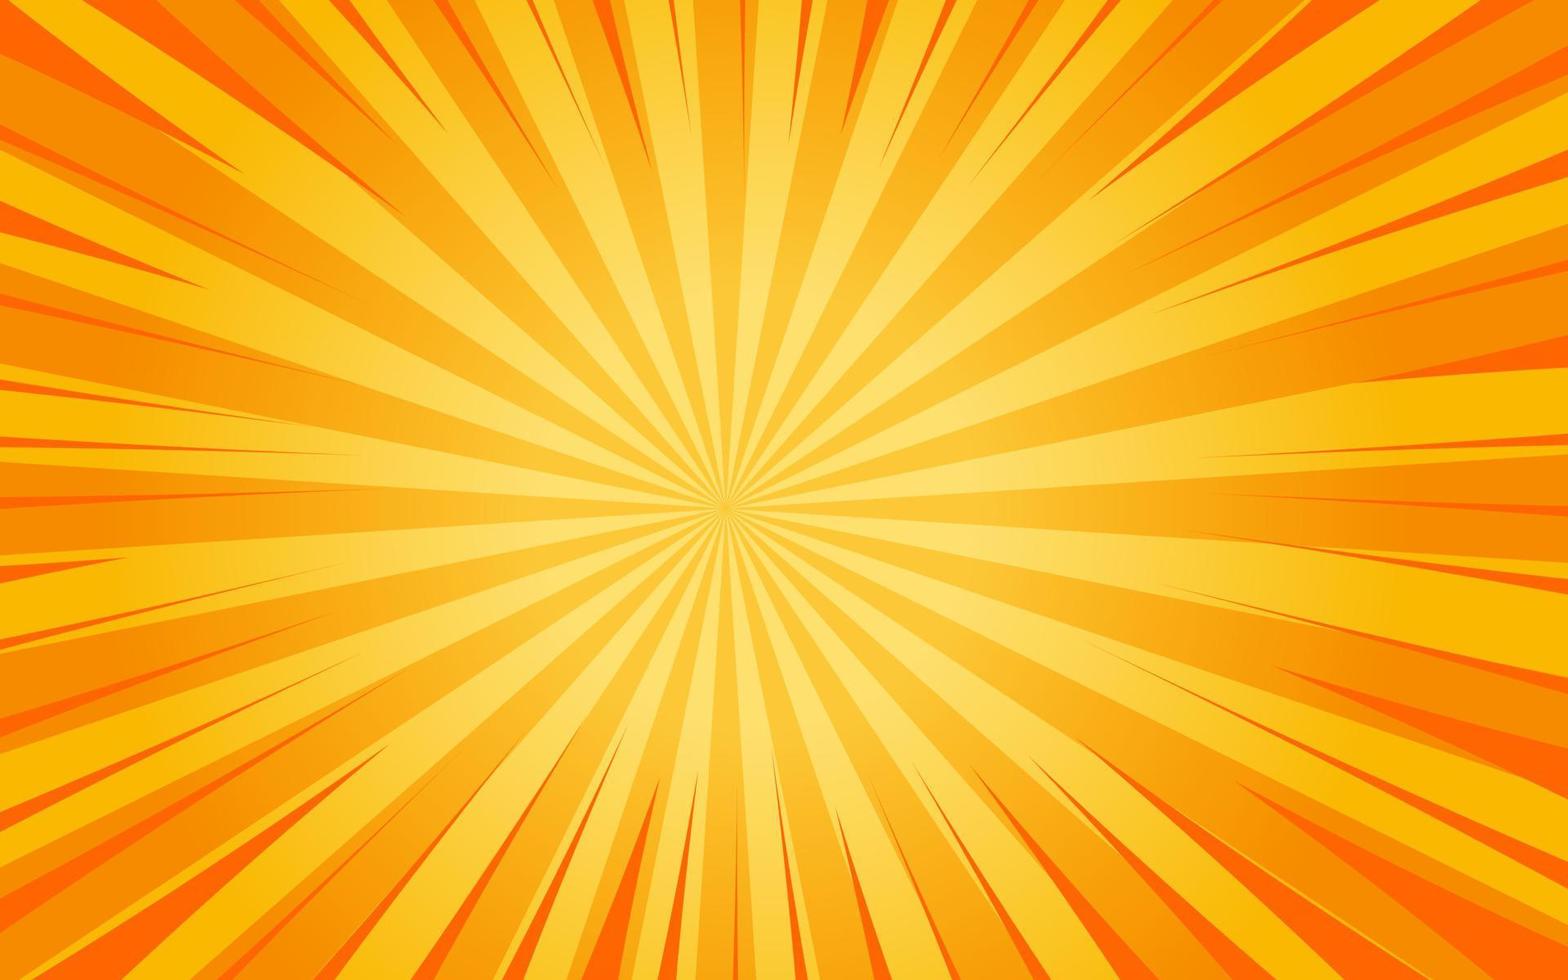 rayons de soleil style vintage rétro sur fond jaune et orange, fond de motif sunburst. des rayons. illustration vectorielle de bannière d'été. fond d'écran abstrait pour la publicité sur les réseaux sociaux d'entreprise de modèle. vecteur